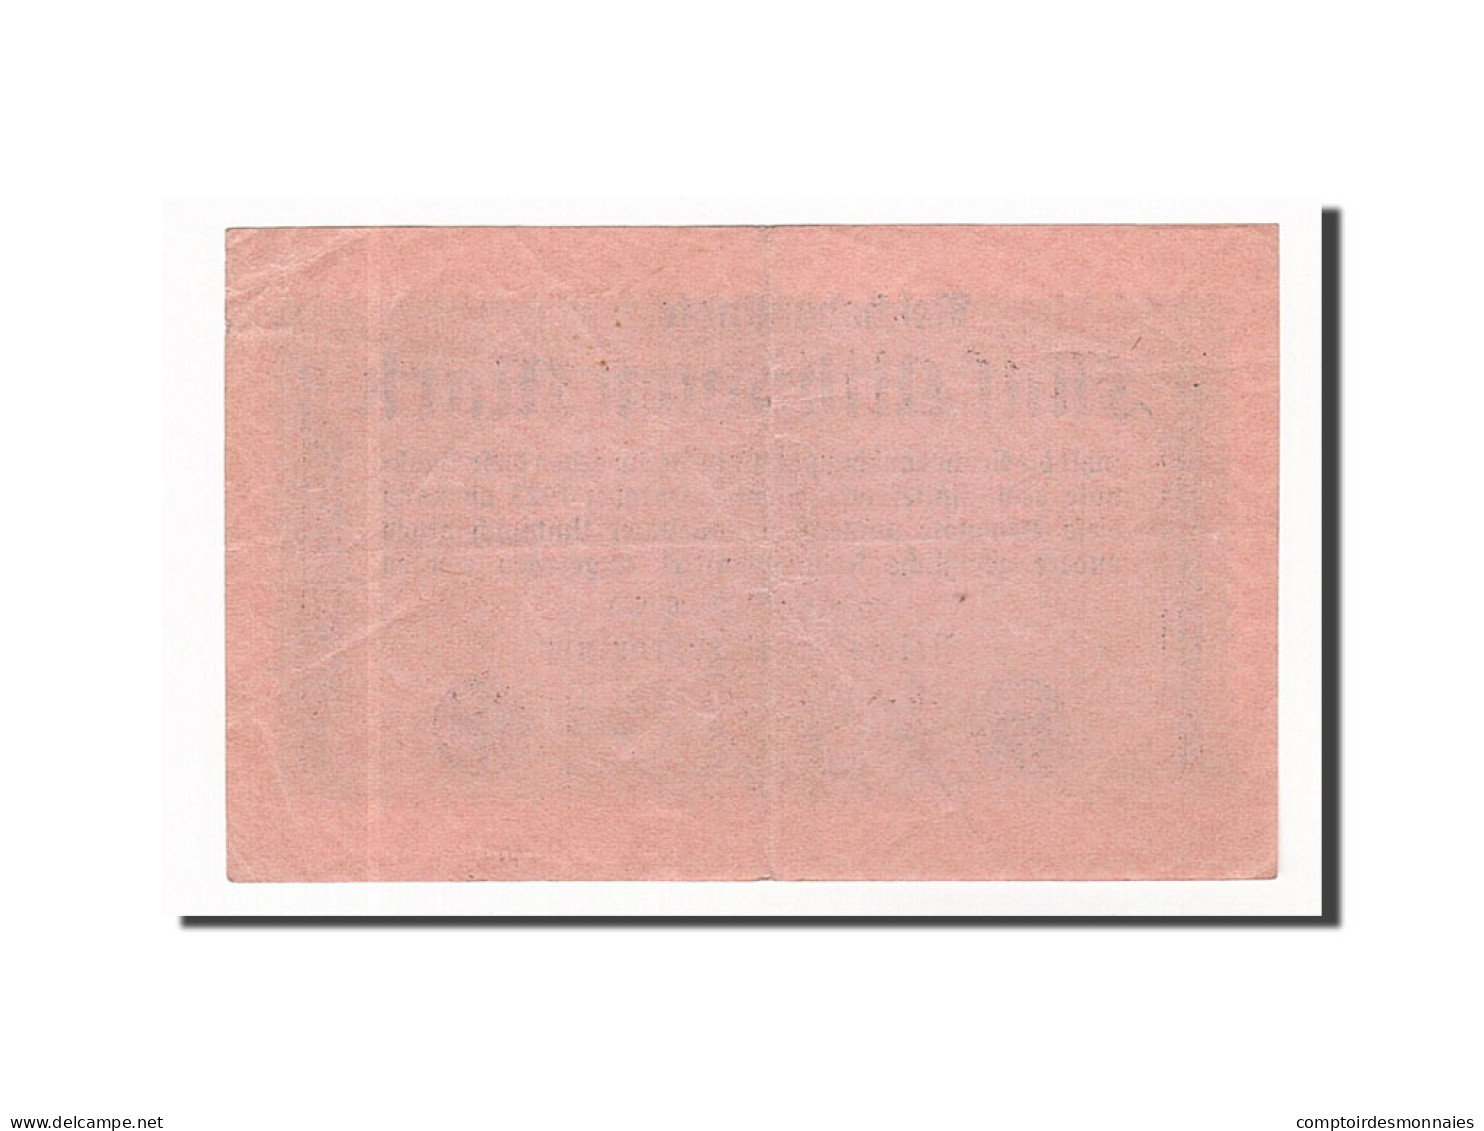 Billet, Allemagne, 5 Millionen Mark, 1923, 1923-08-20, TTB+ - 5 Millionen Mark